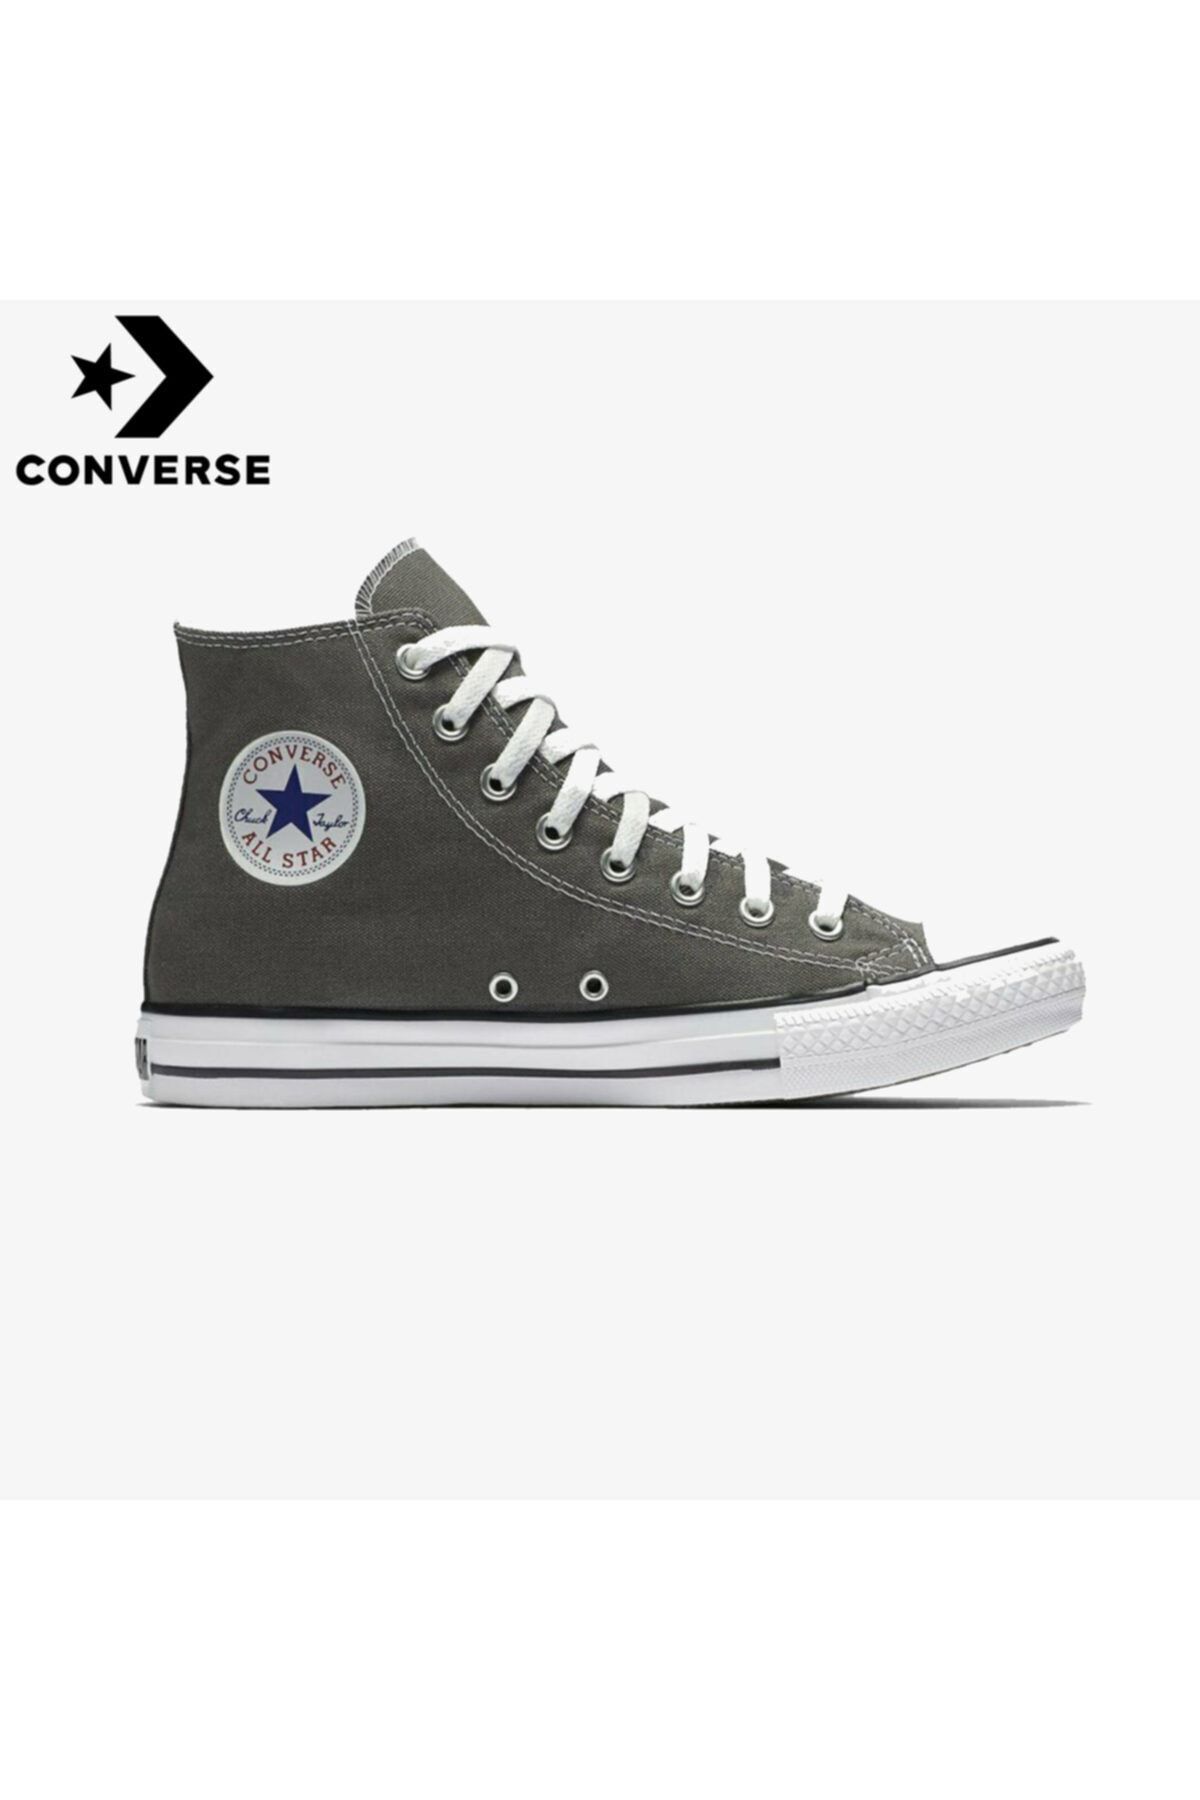 Converse Unisex Gri Boğazlı Yürüyüş Ayakkabısı 1j793c